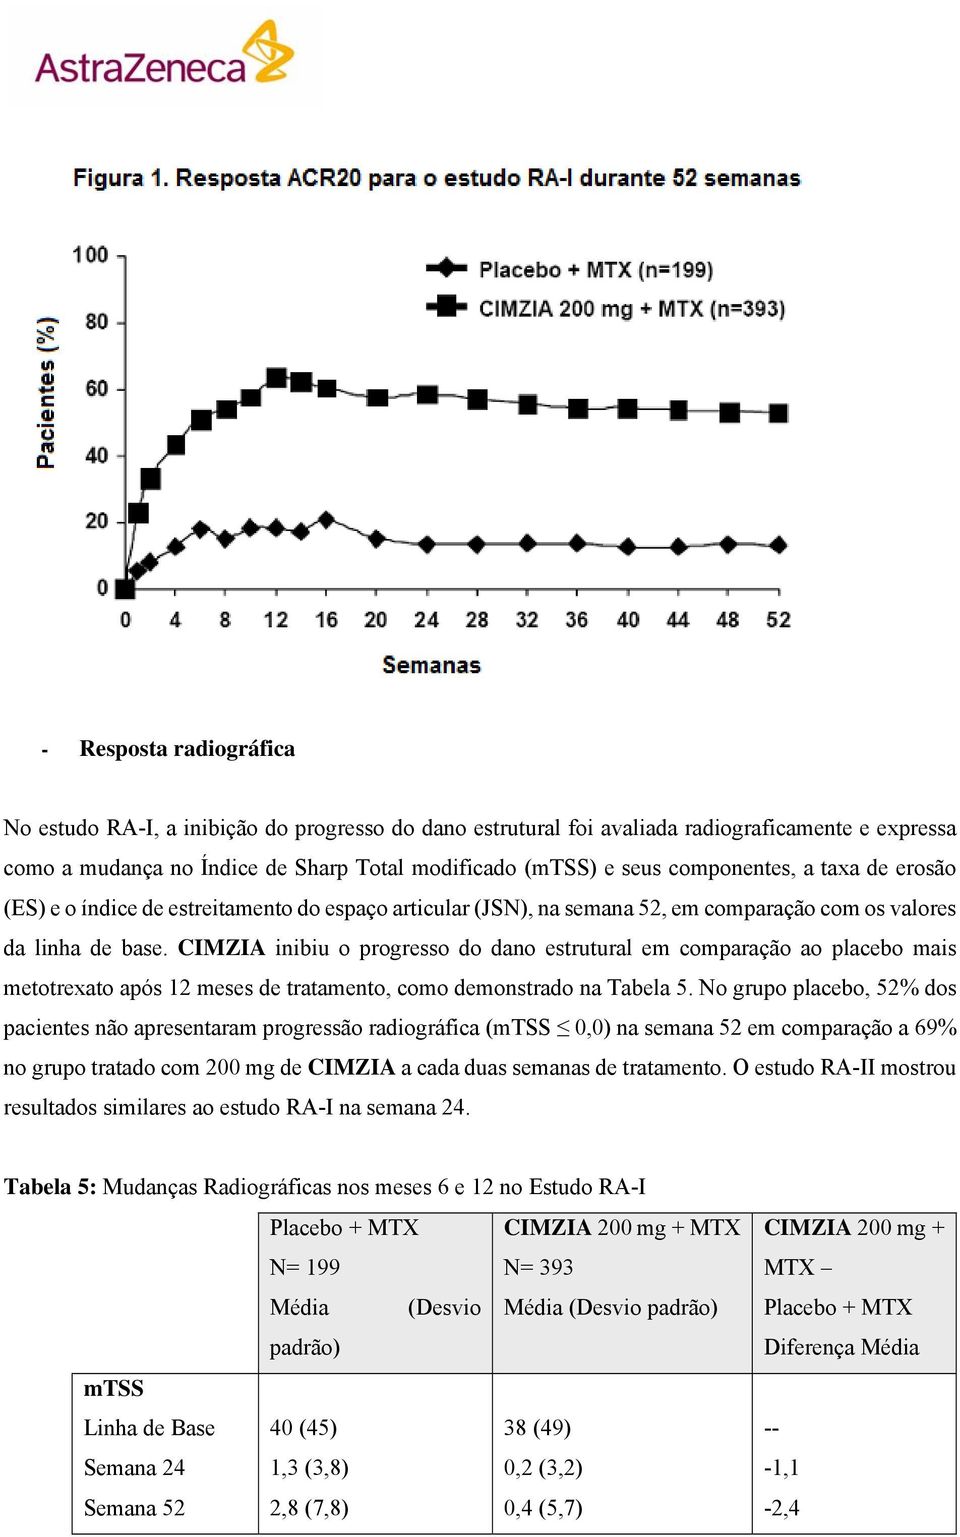 CIMZIA inibiu o progresso do dano estrutural em comparação ao placebo mais metotrexato após 12 meses de tratamento, como demonstrado na Tabela 5.